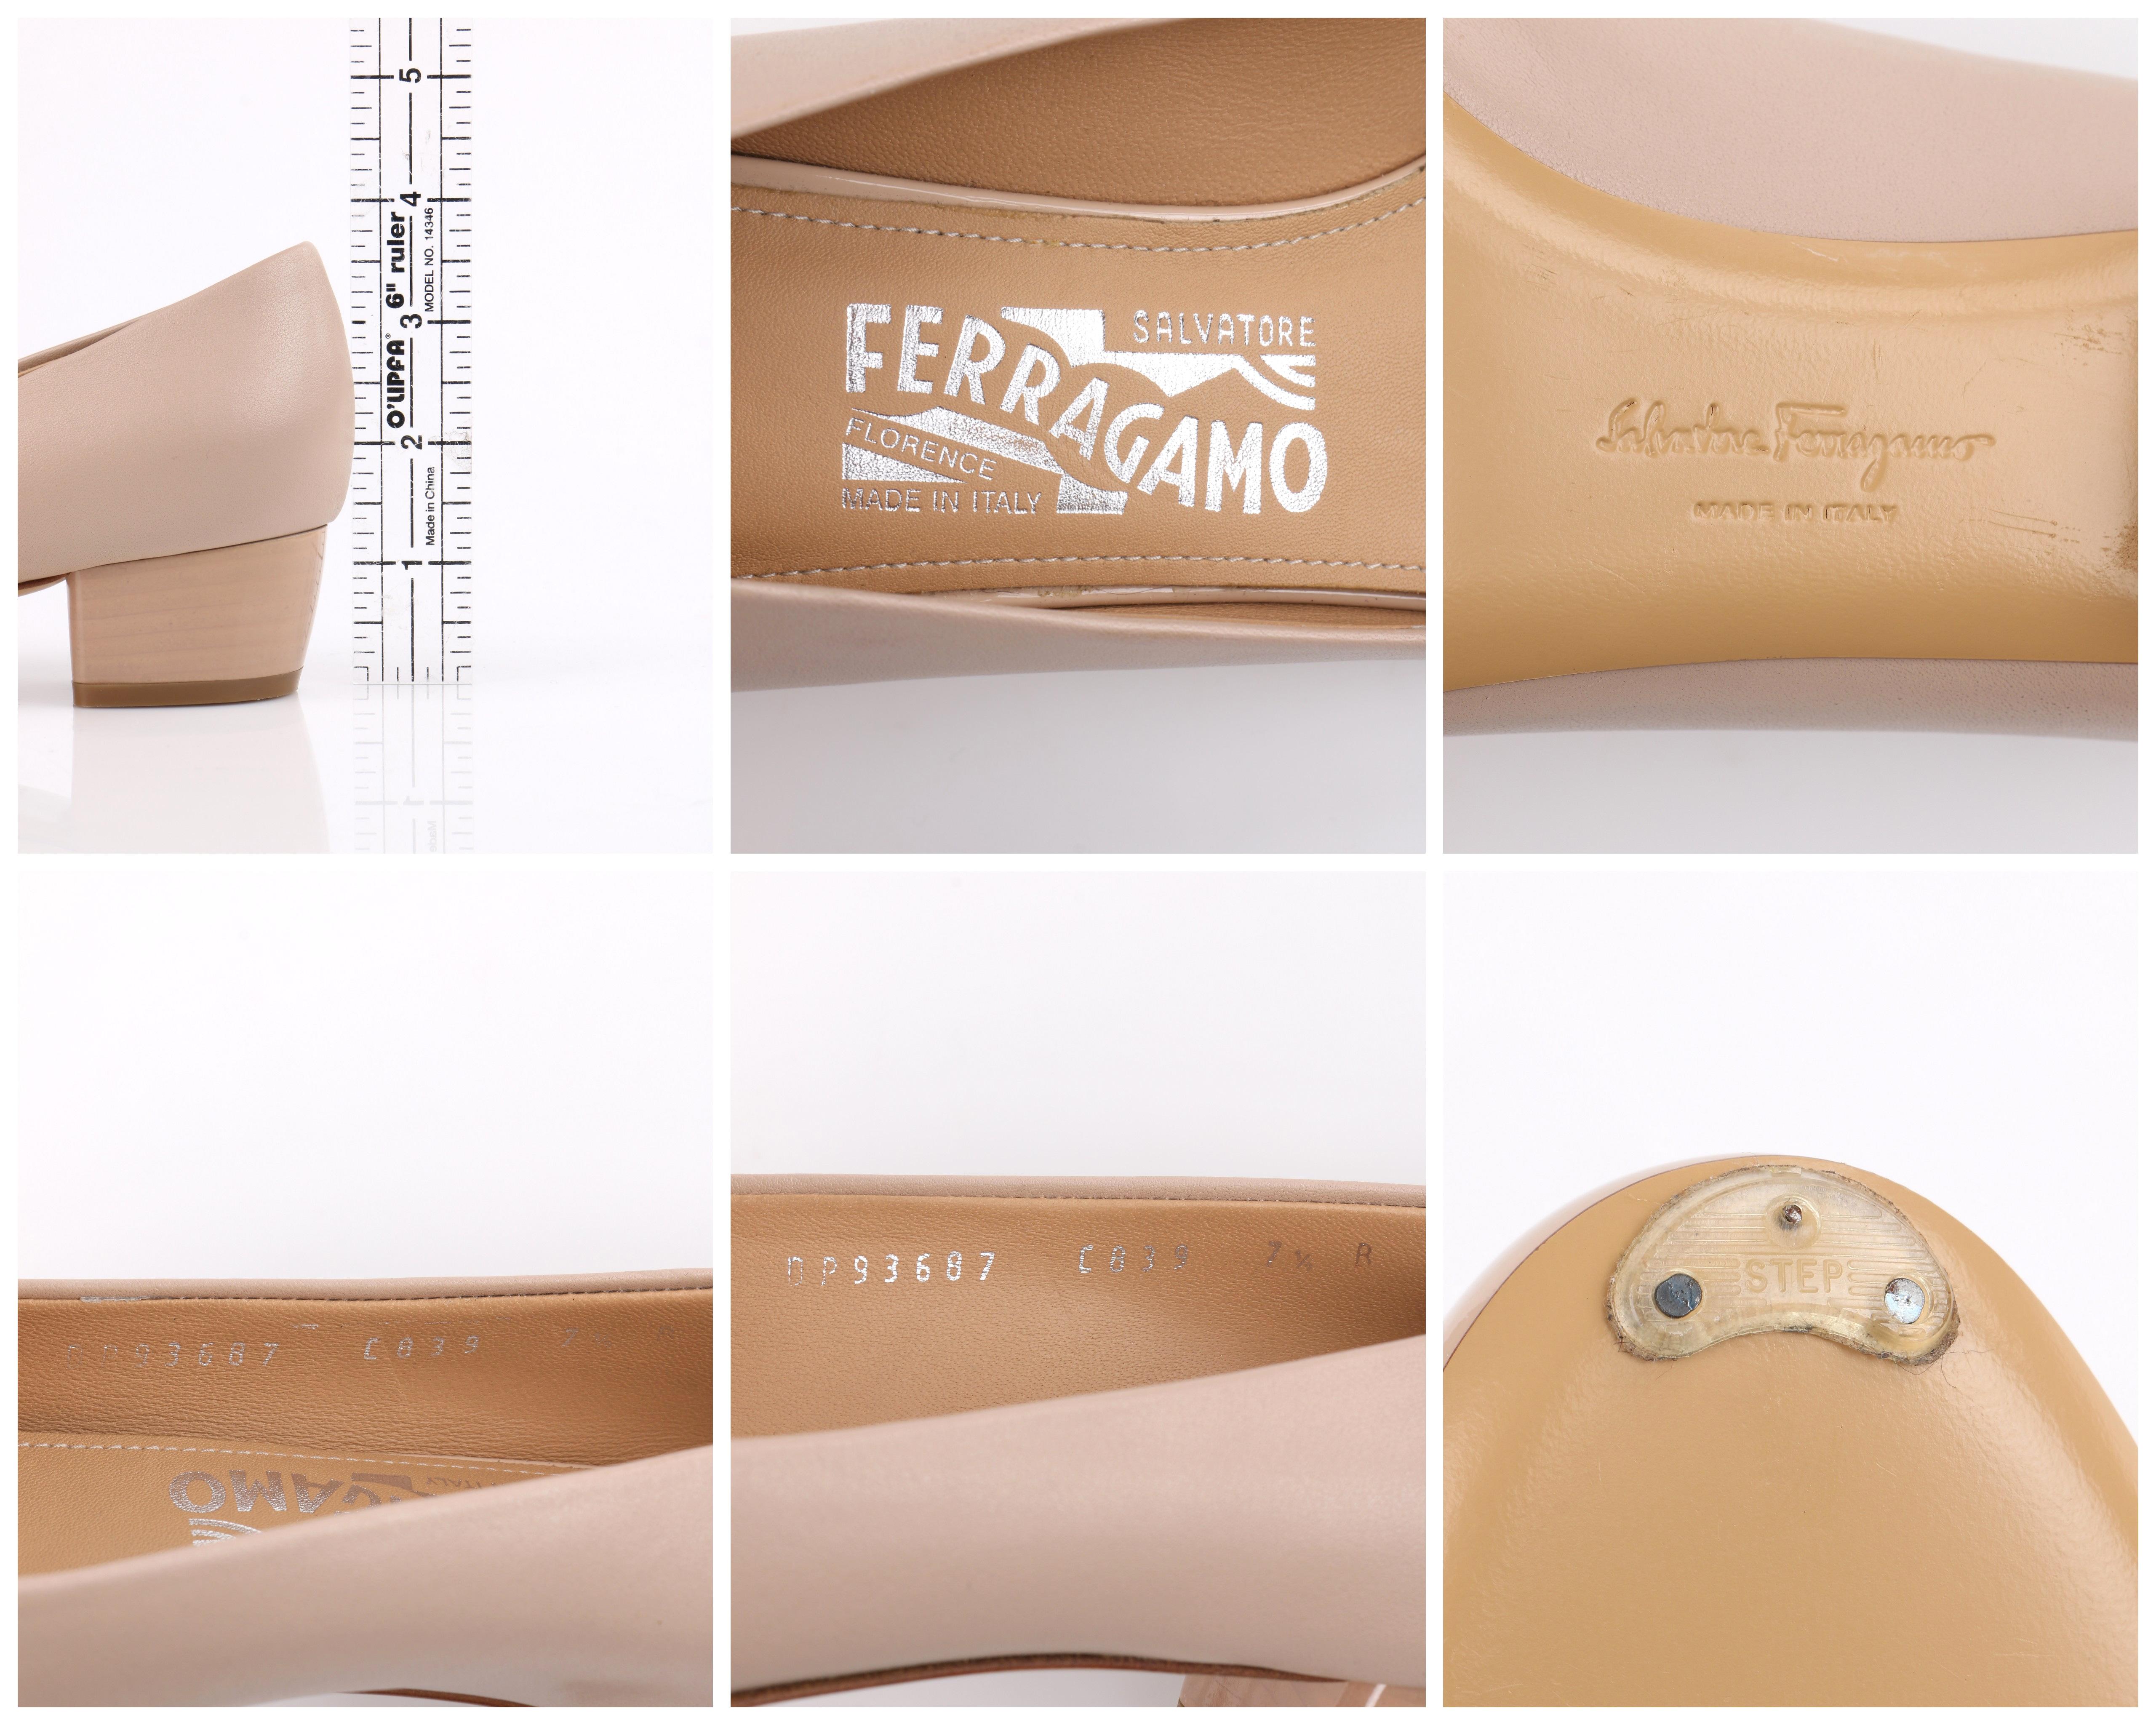 SALVATORE FERRAGAMO “Pim” Nude Patent Leather Silver Chain Pump Heel Size 7.5  1